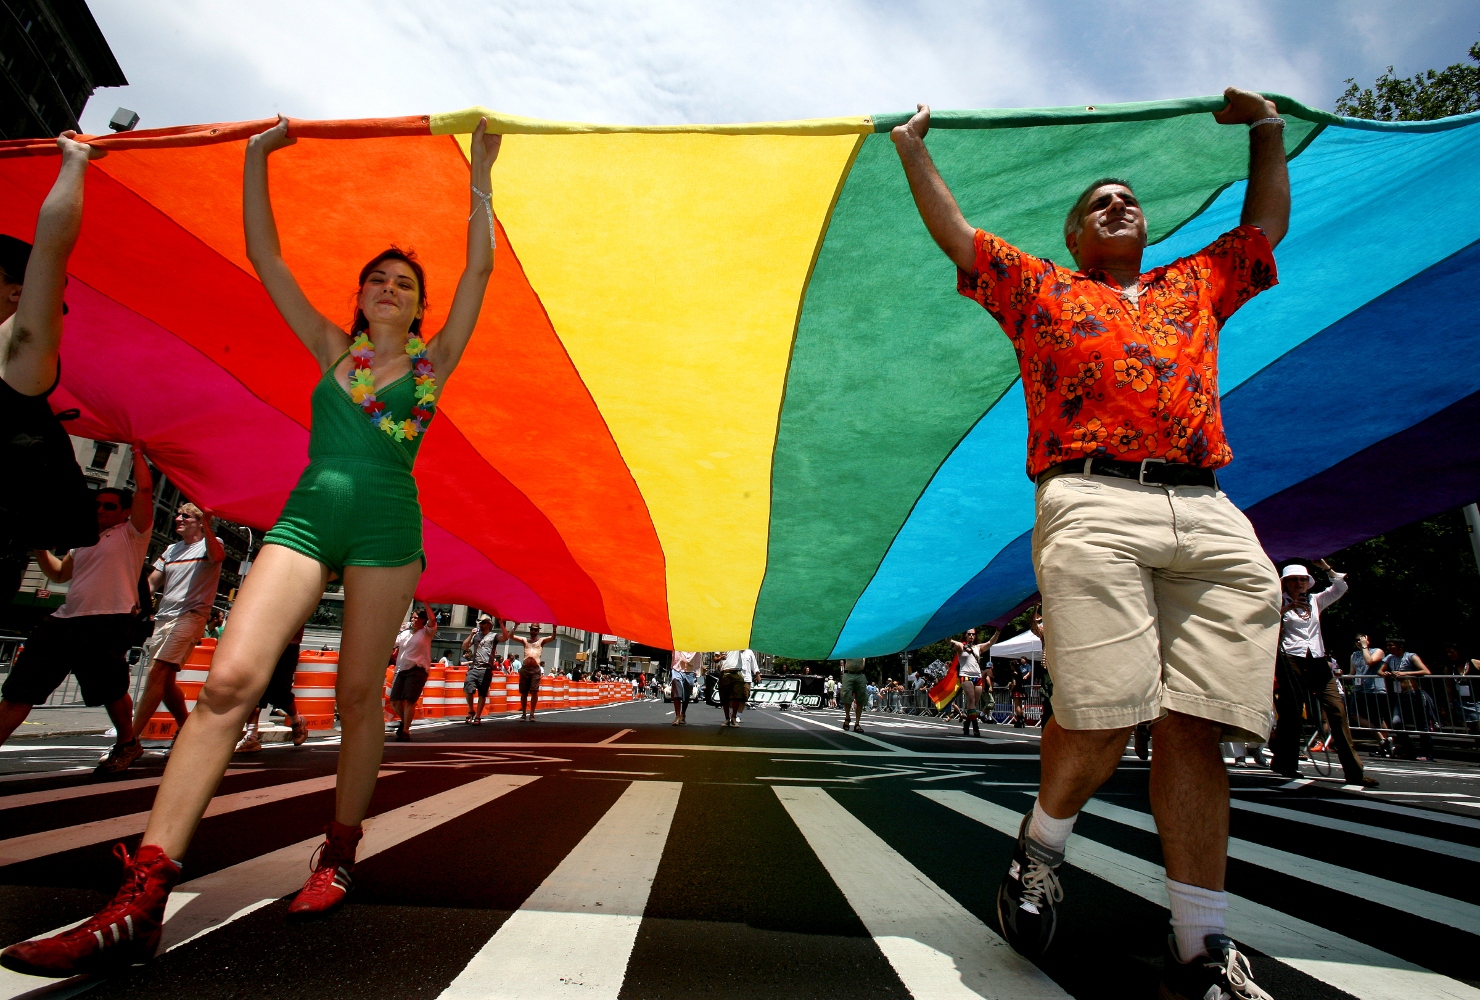 Μεσσαίωνας: Δικαστήριο στην Ιαπωνία έκρινε συνταγματική την απαγόρευση του γάμου ομοφυλόφιλων